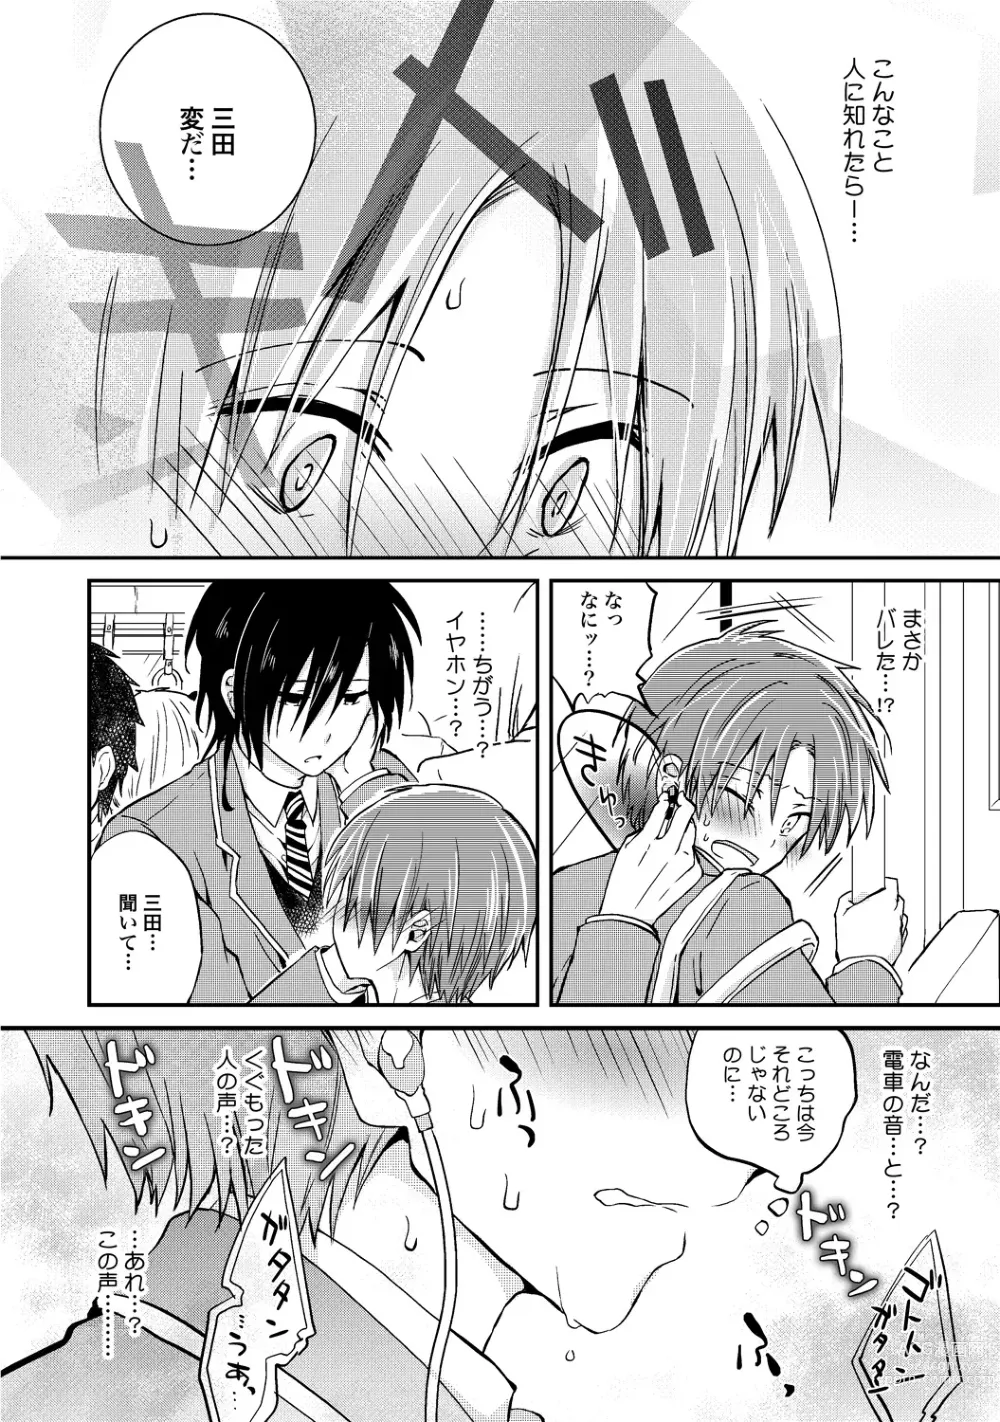 Page 15 of manga Ijou Aishuu Inbiroku [R18] [Digital]]